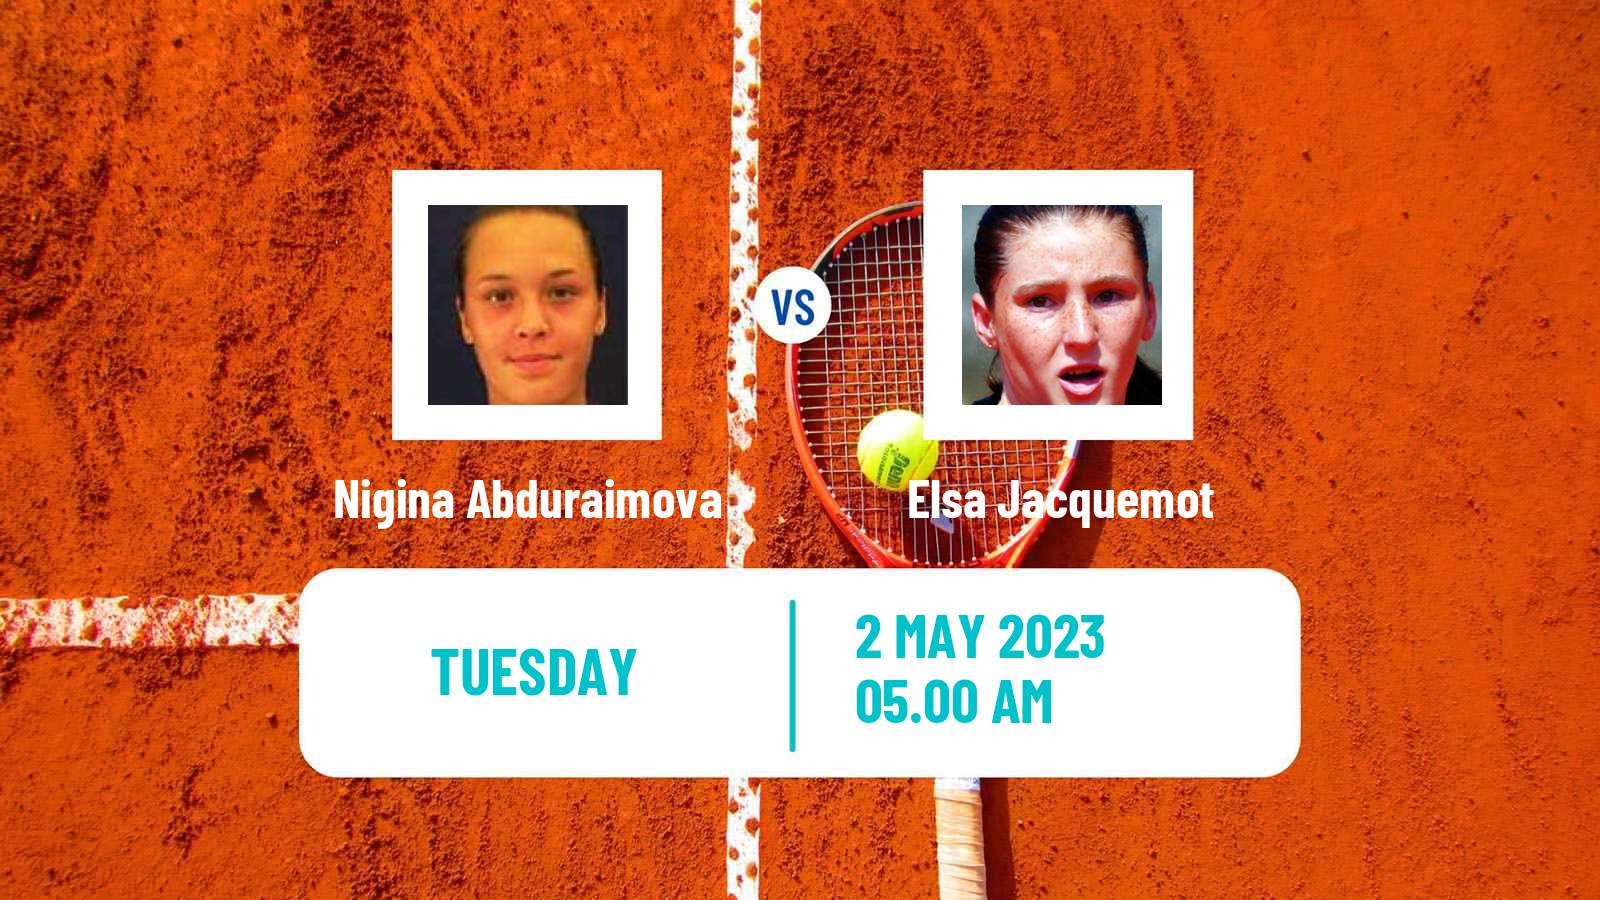 Tennis ATP Challenger Nigina Abduraimova - Elsa Jacquemot